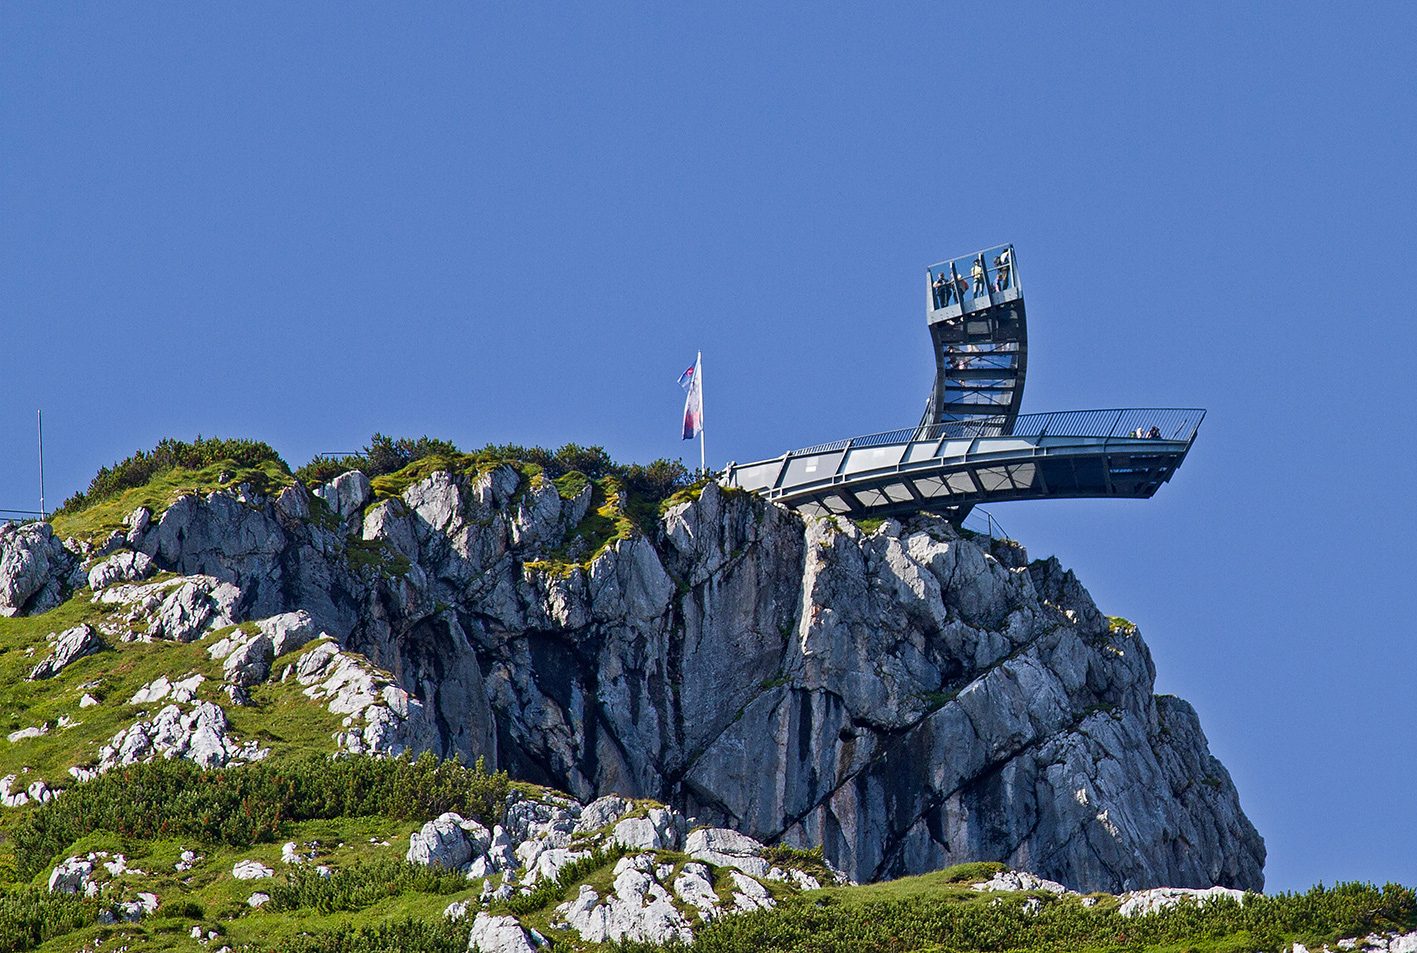 Alpspix, Errichtung einer Aussichtsplattform, Bergstation Alpspitzbahn